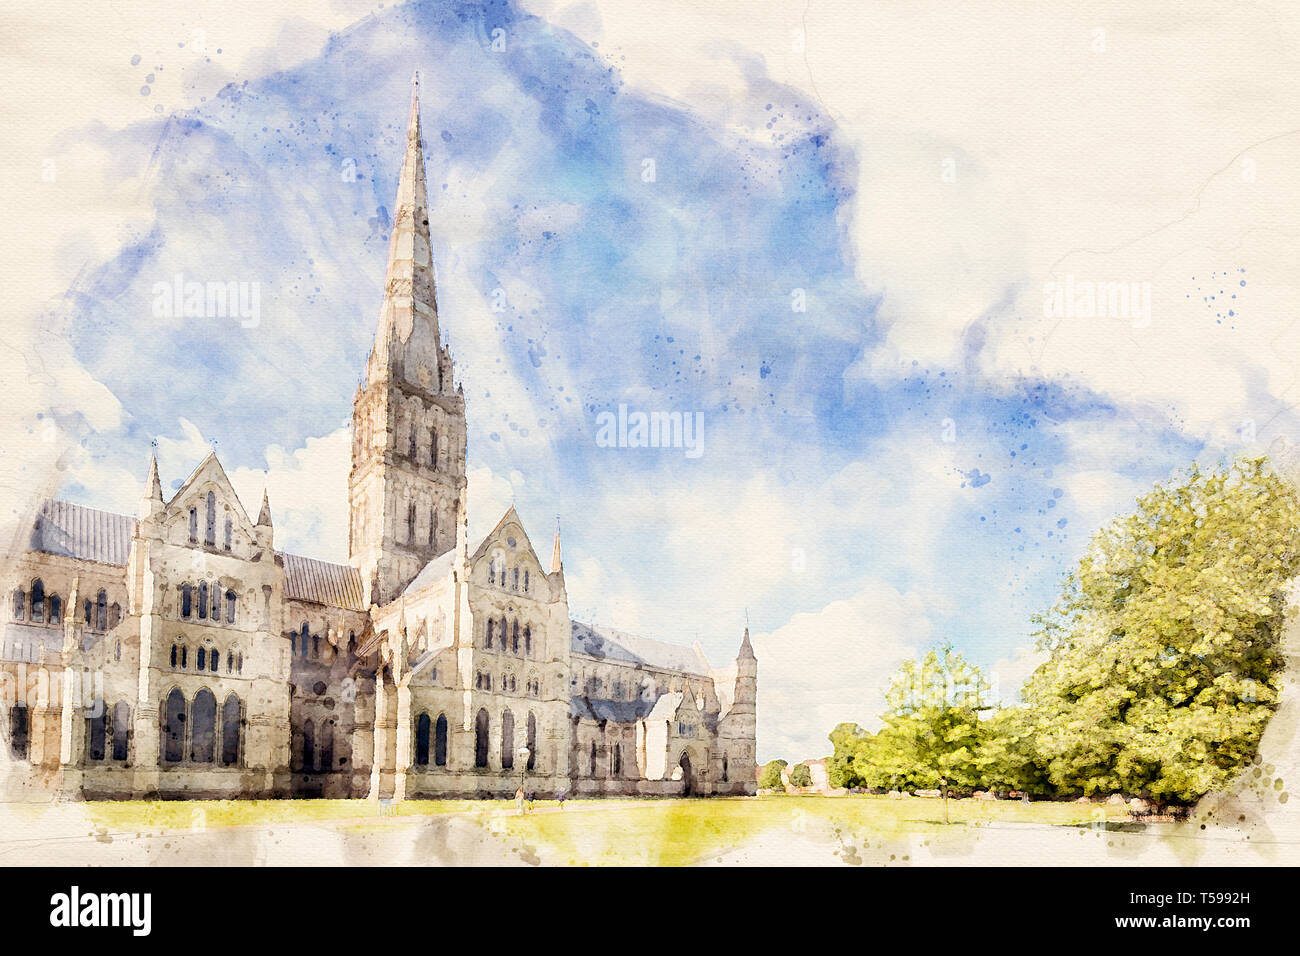 Effet aquarelle à partir d'une photo de la cathédrale de Salisbury, Wiltshire, Angleterre, Royaume-Uni Banque D'Images